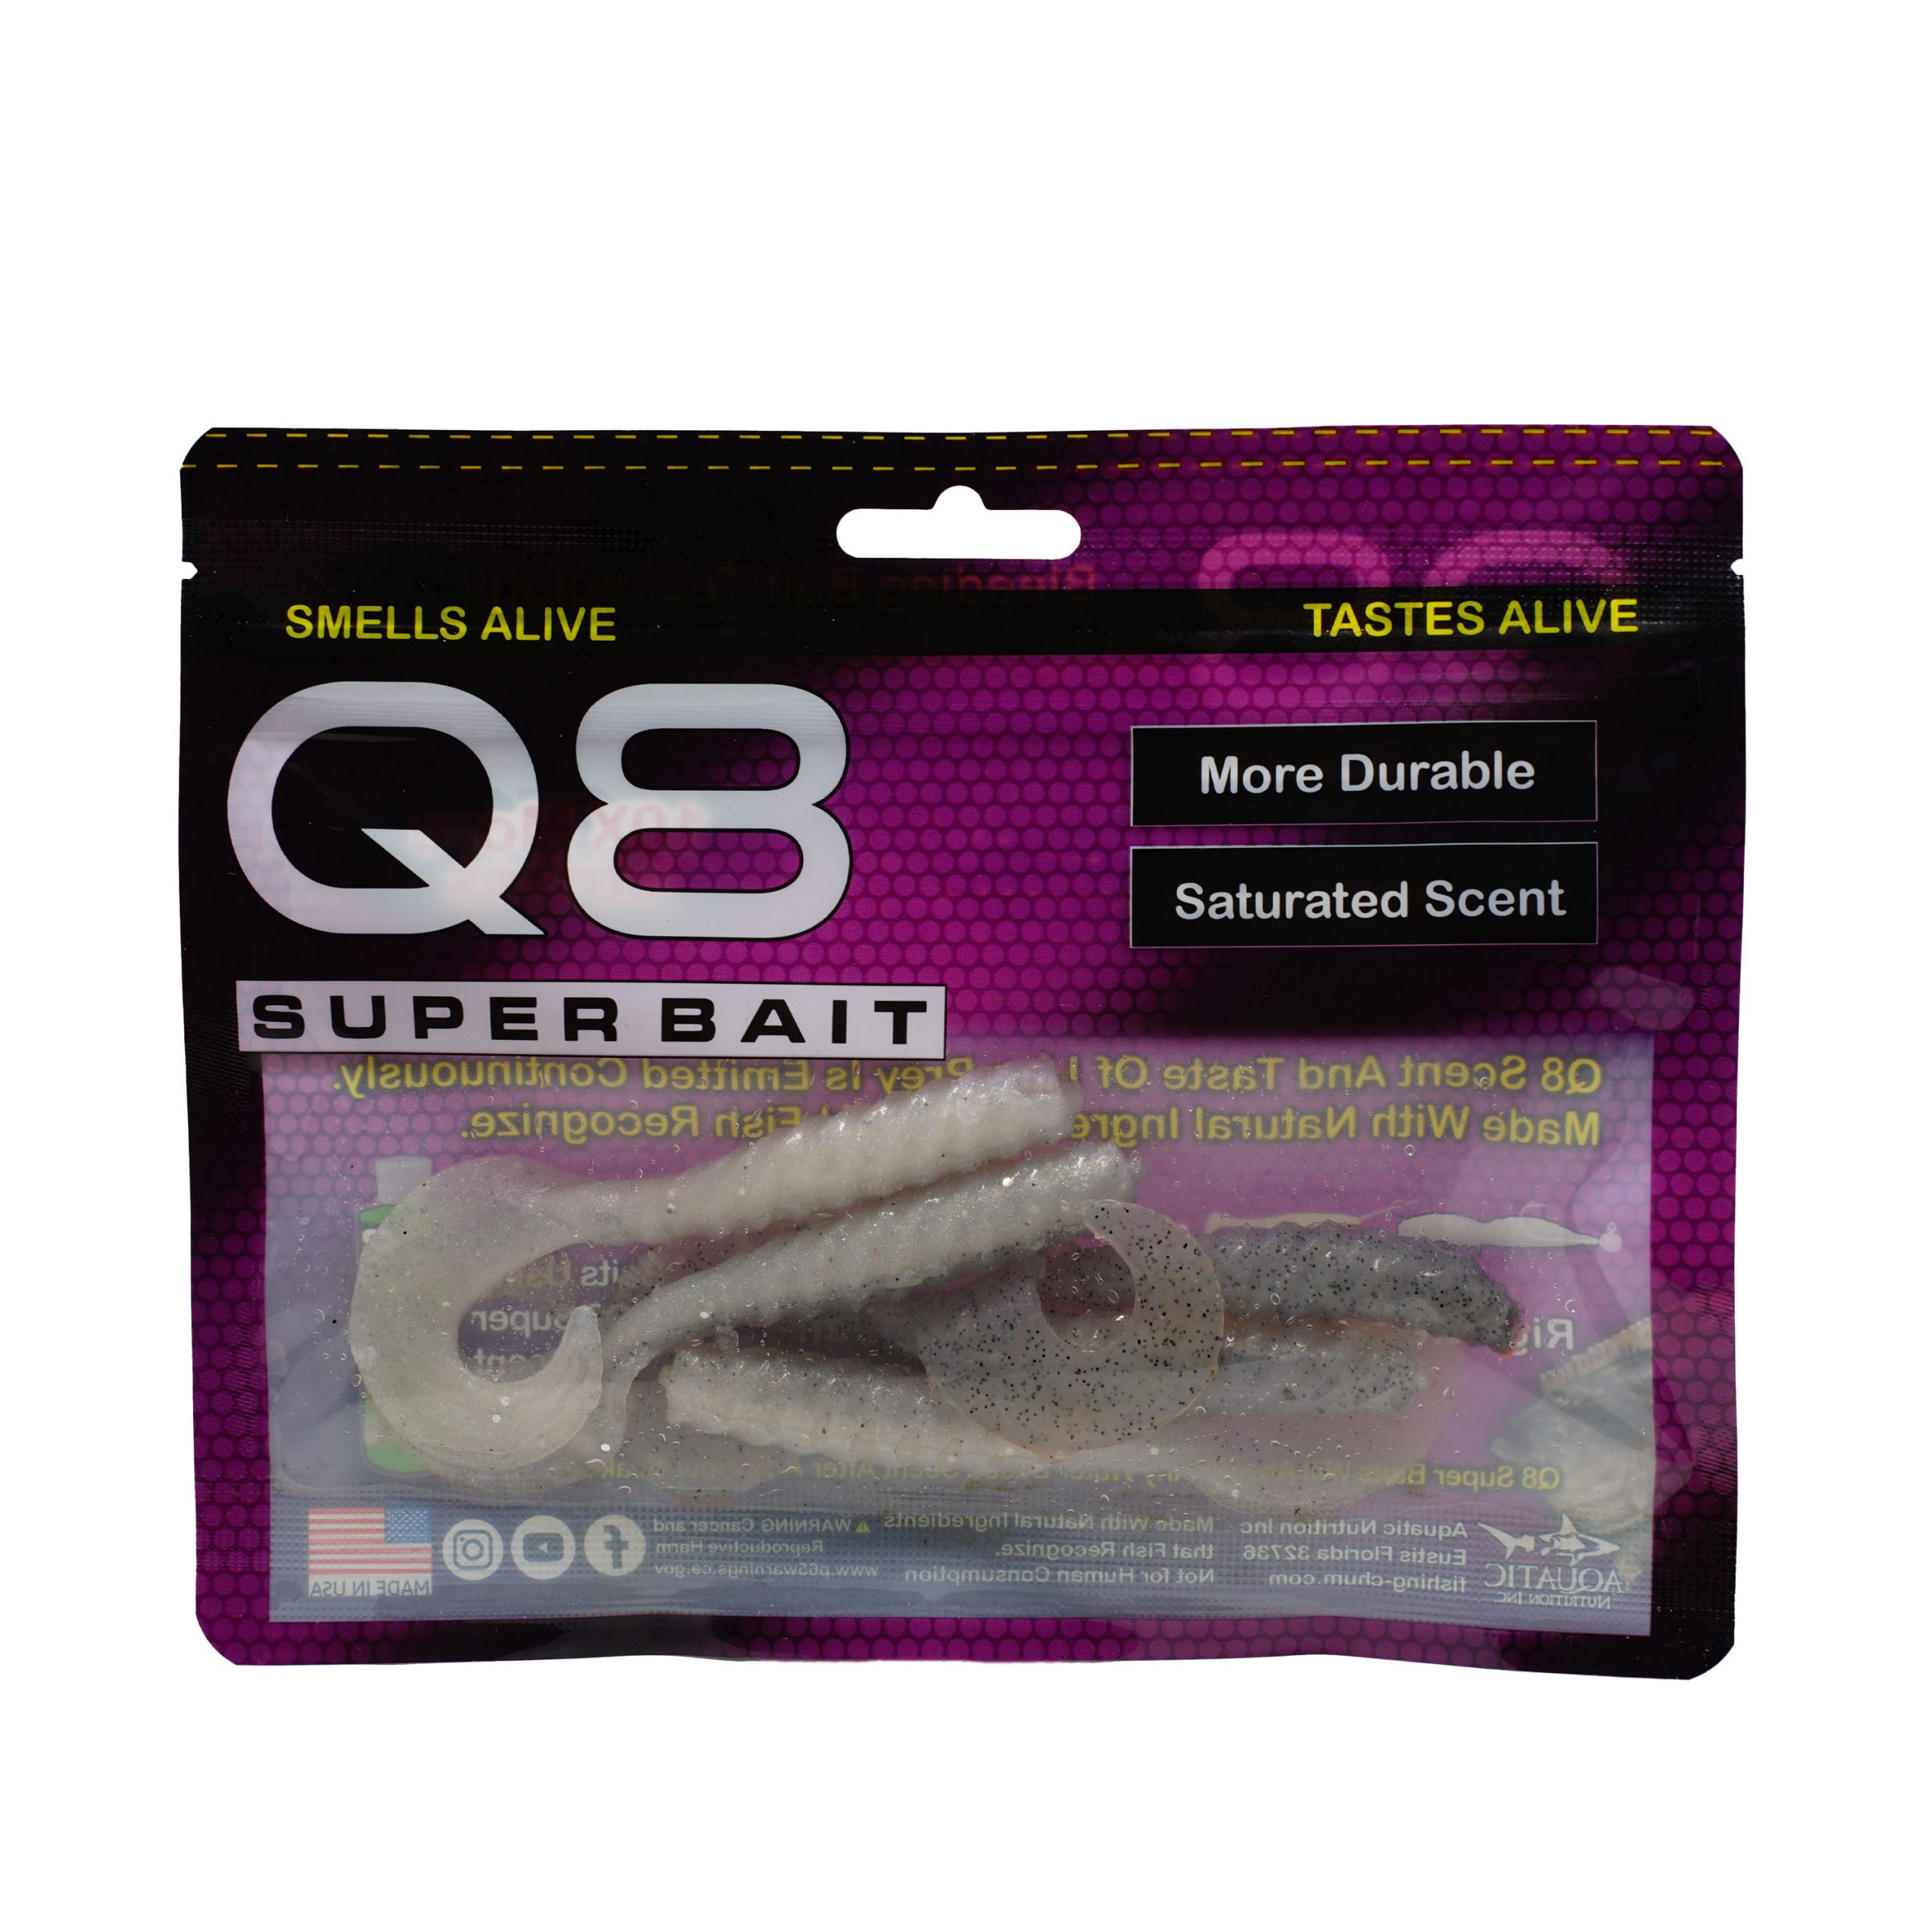 Q8 Curly Tail Swim – Fishing Chum By Aquatic Nutrition